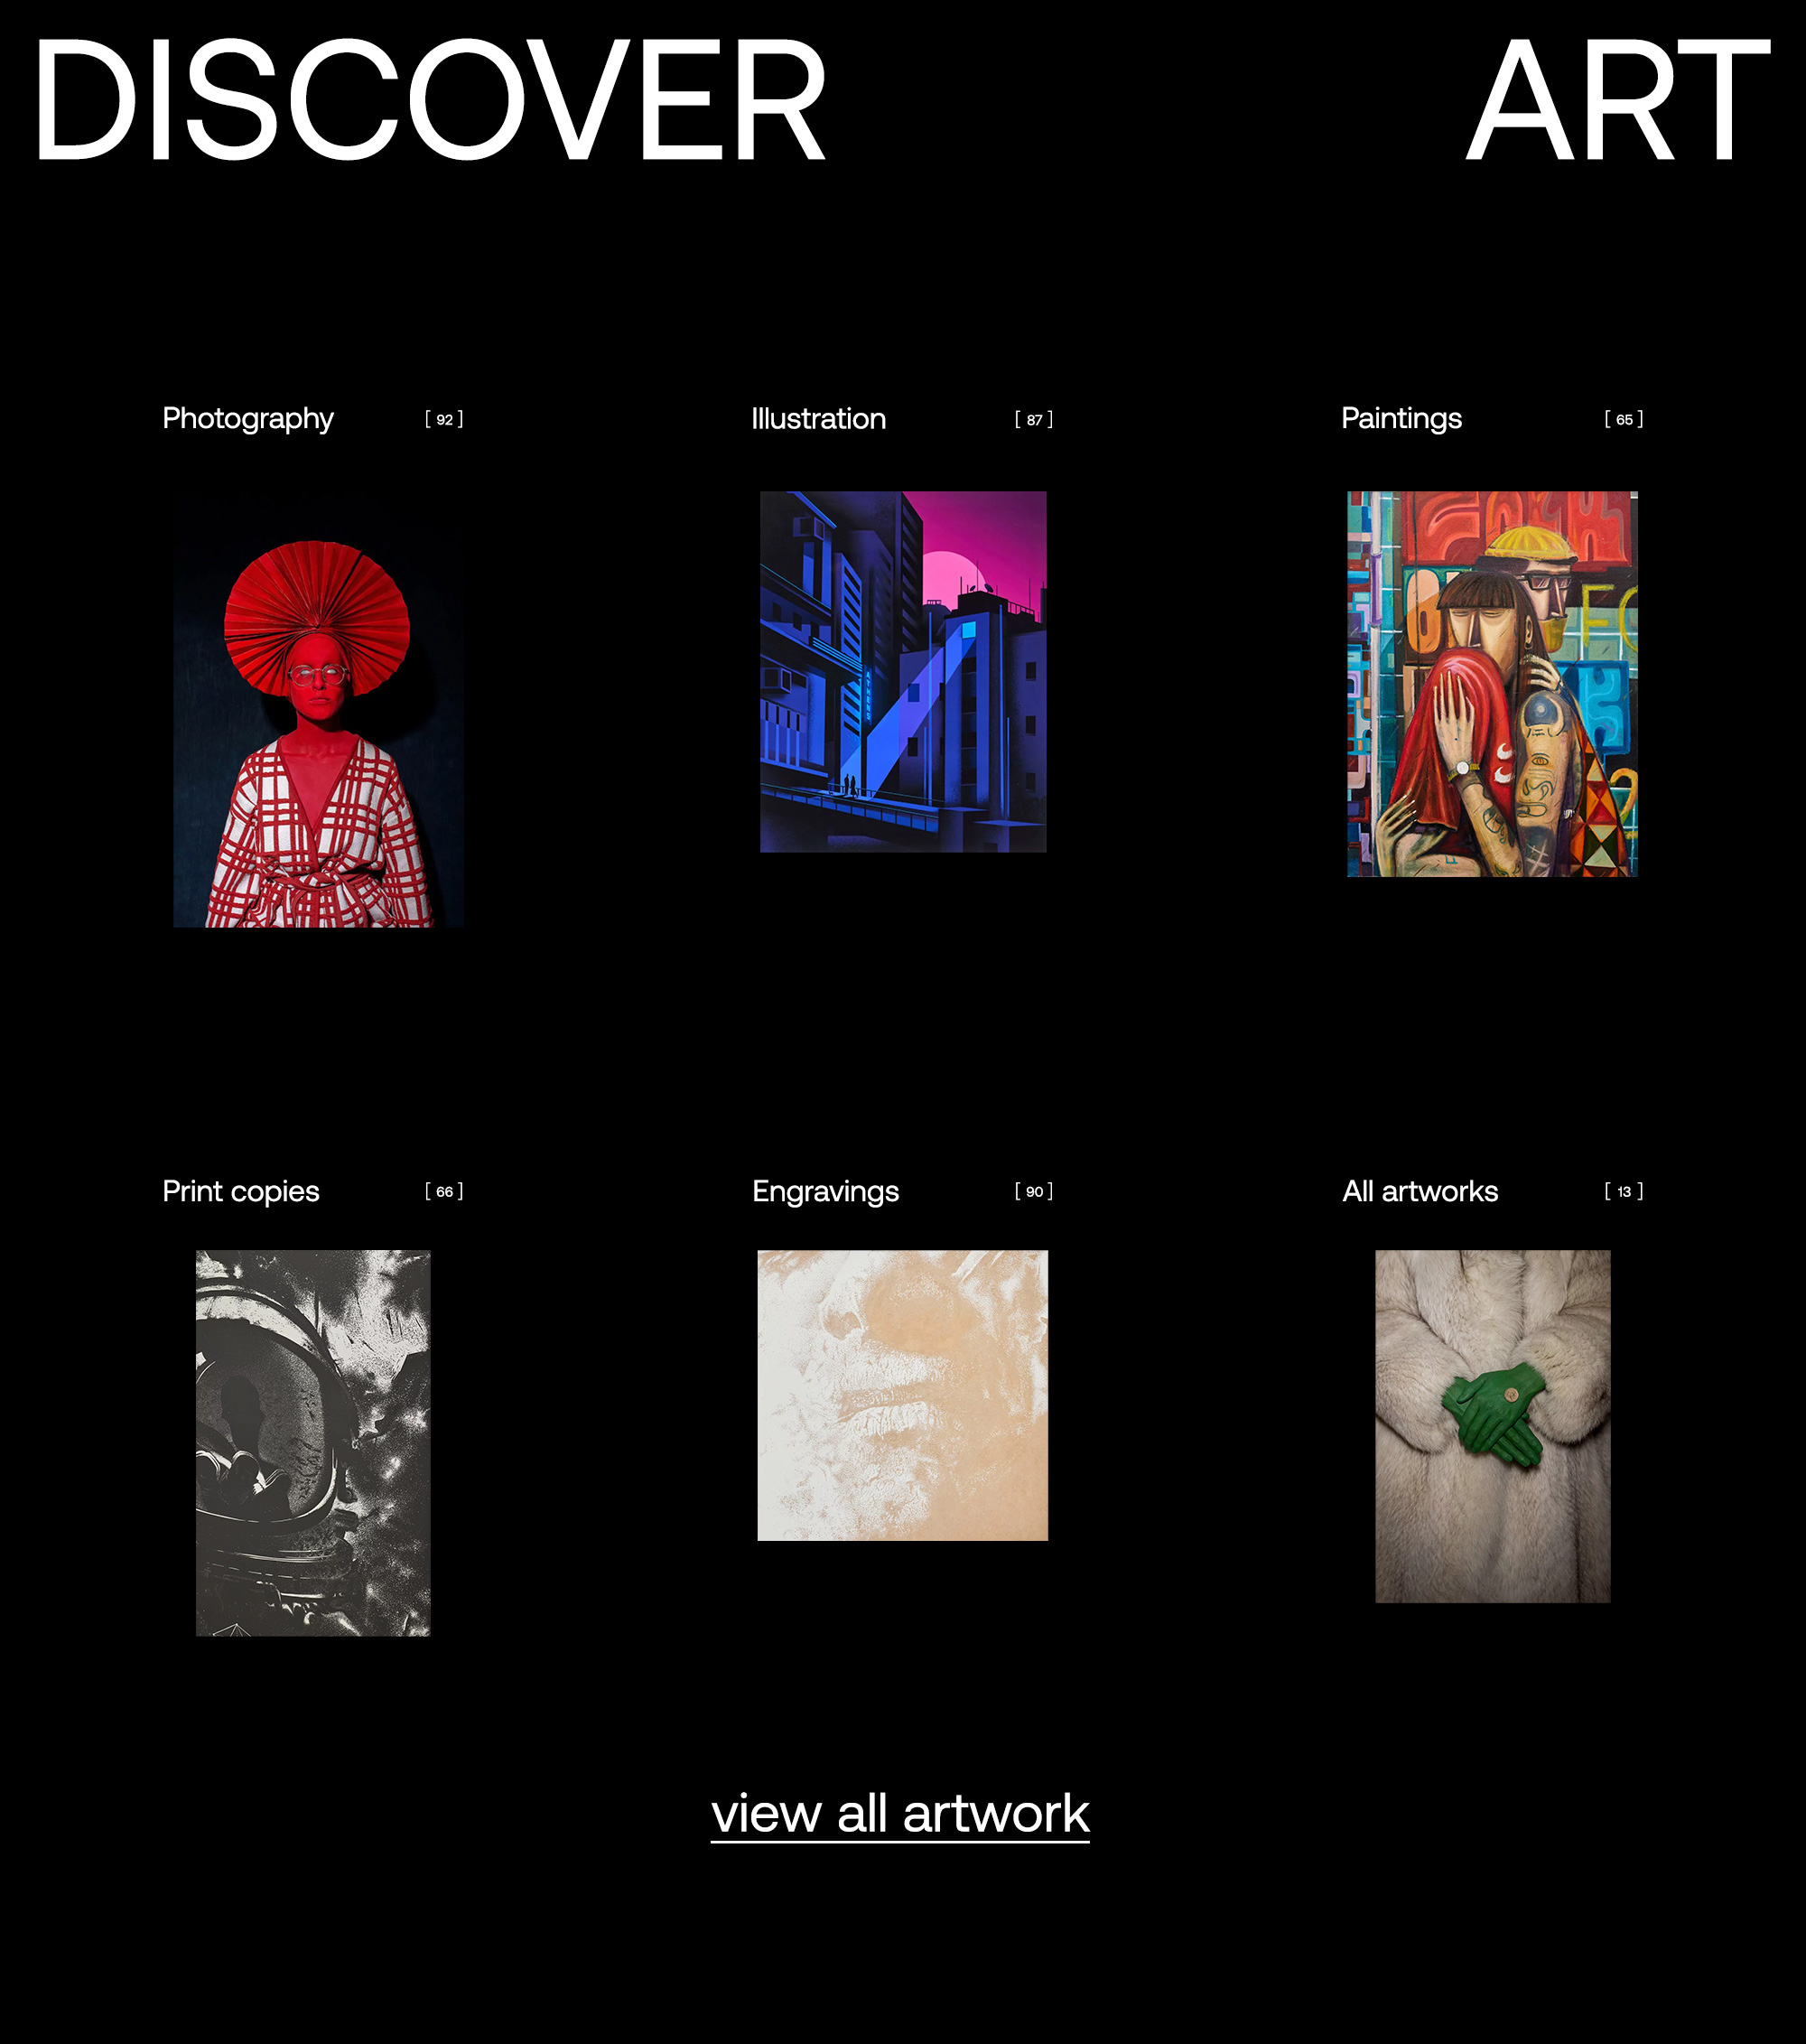 dot galleries website design artwork categories kommigraphics